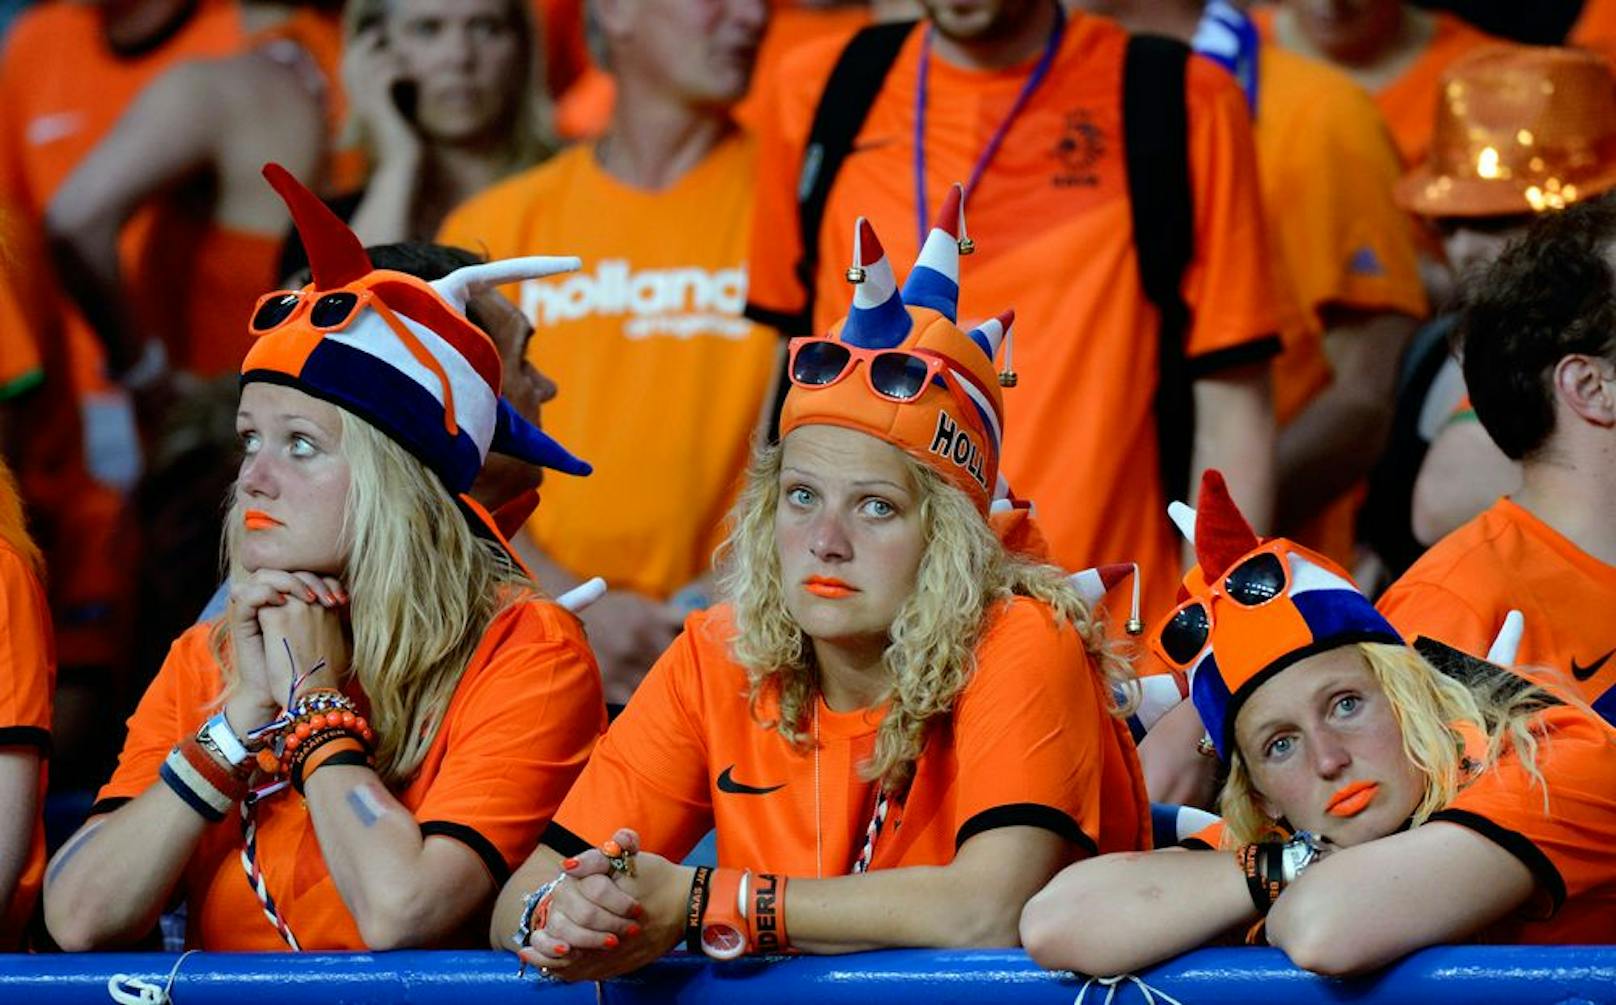 Ein anstehendes WM-Qualifikationsspiel der niederländischen Männer-Fußballnationalmannschaft würde vor leeren Rängen stattfinden.